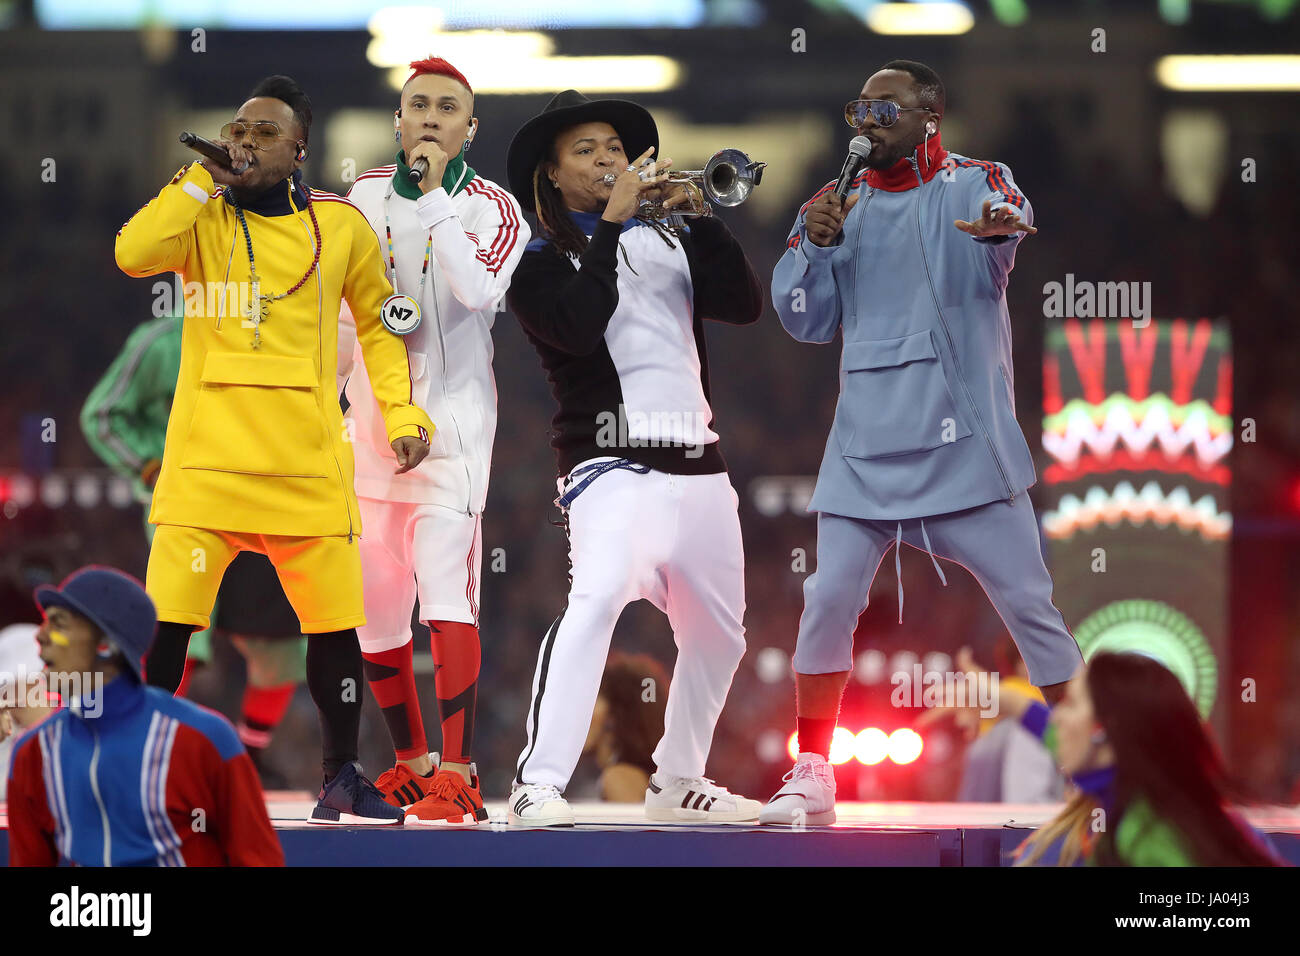 Apl.de.ap (izquierda), will.i.am (derecha) y tabú (segundo a la izquierda) de Black Eyed Peas realizar antes de la final de la UEFA Champions League en el Estadio Nacional, Cardiff. Foto de stock